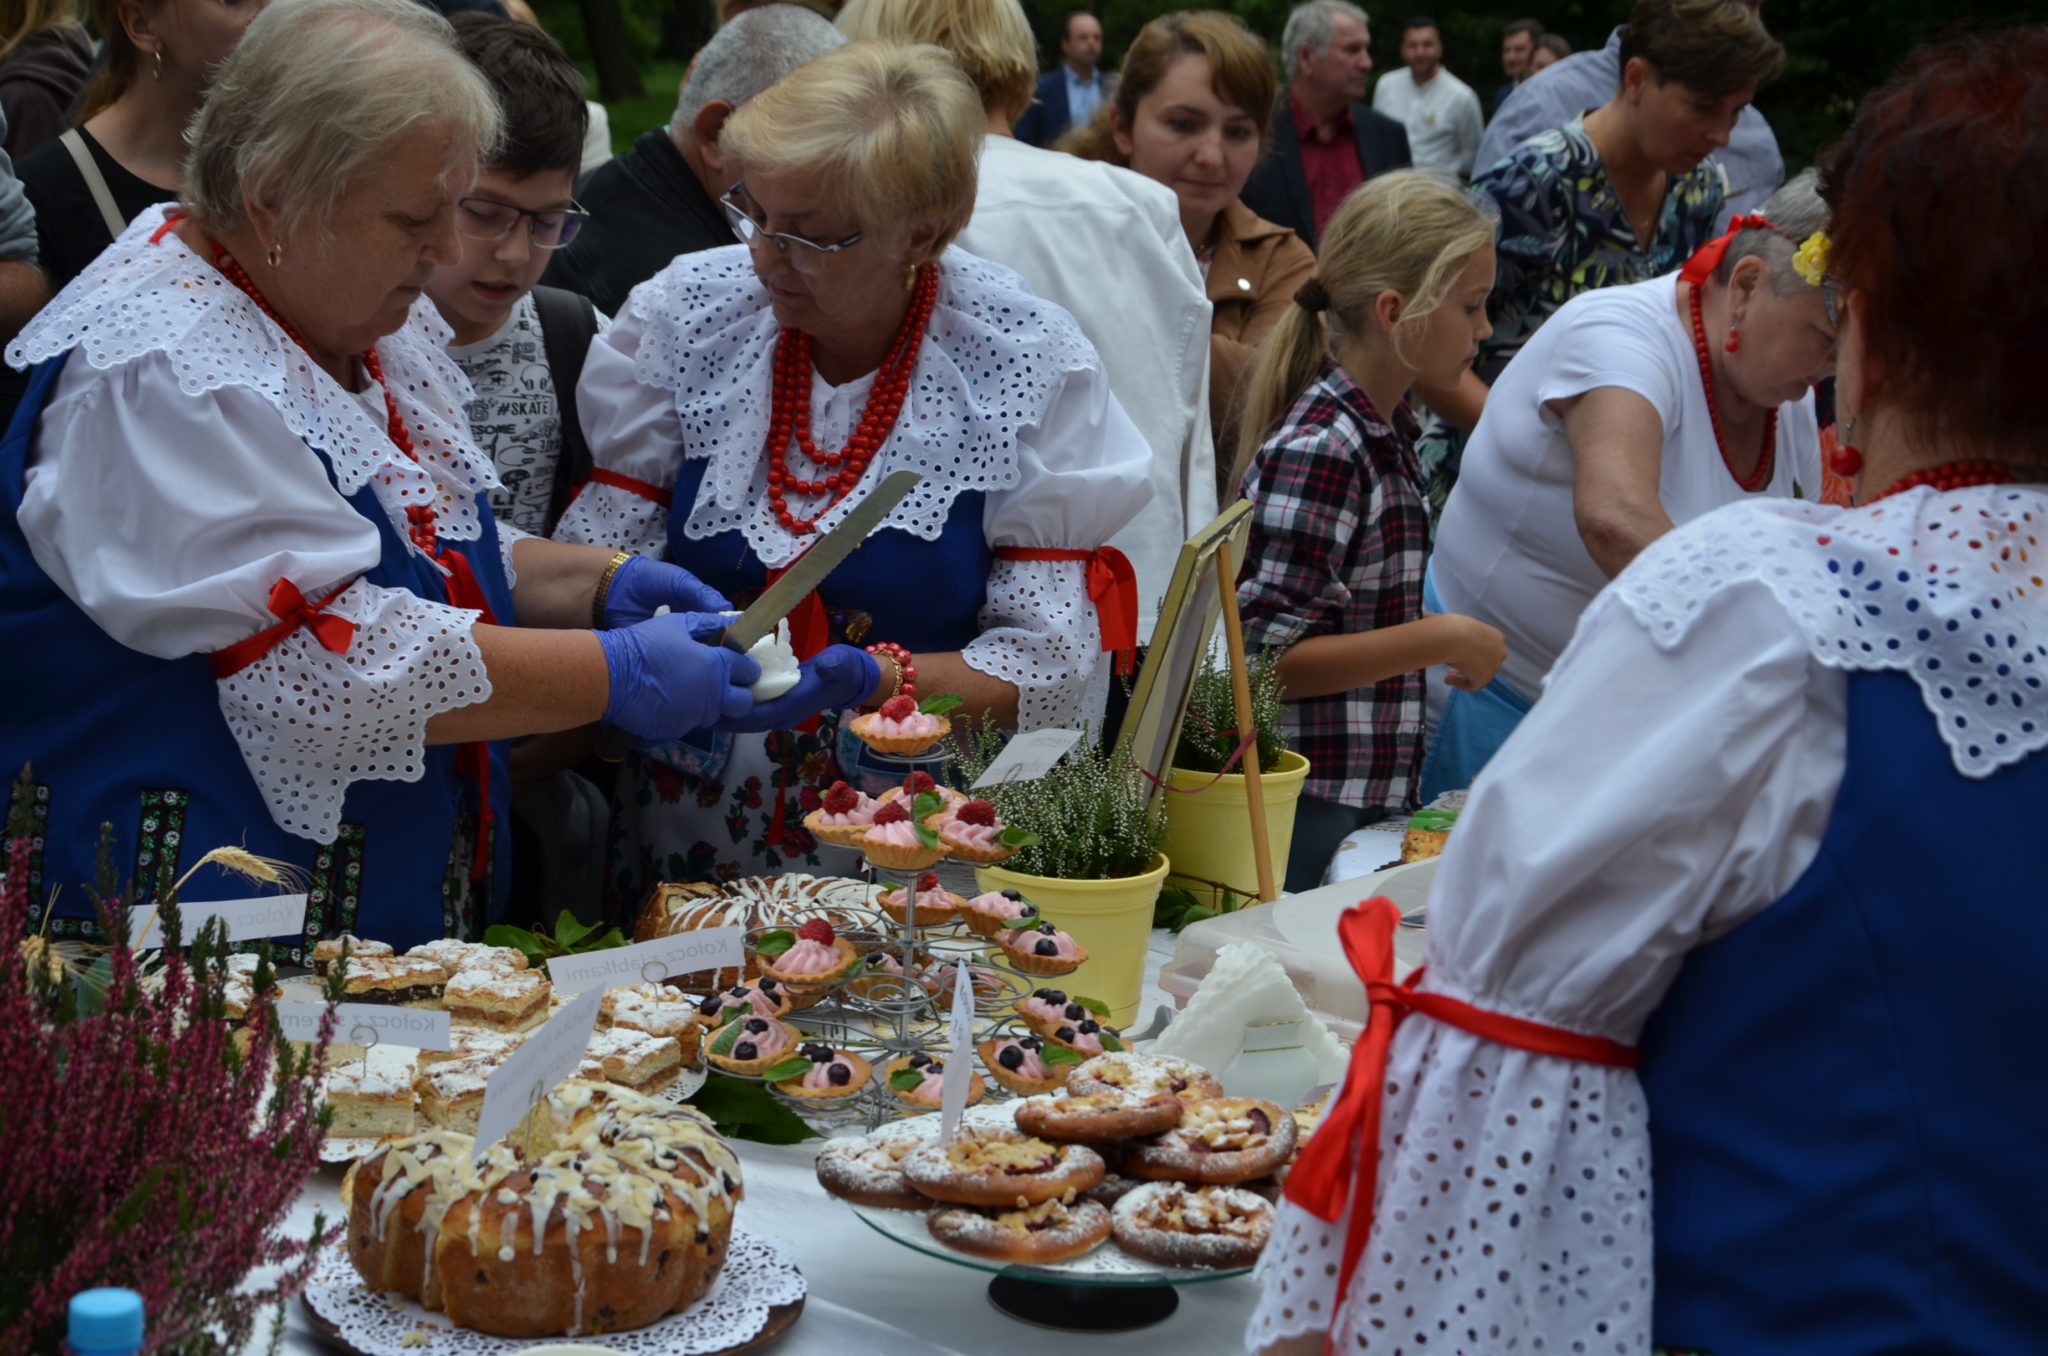 Kilka kobiet ubranych w stroje ludowe, nakładają na talerzyki ciasto, które znajduje się na zastawionym stole